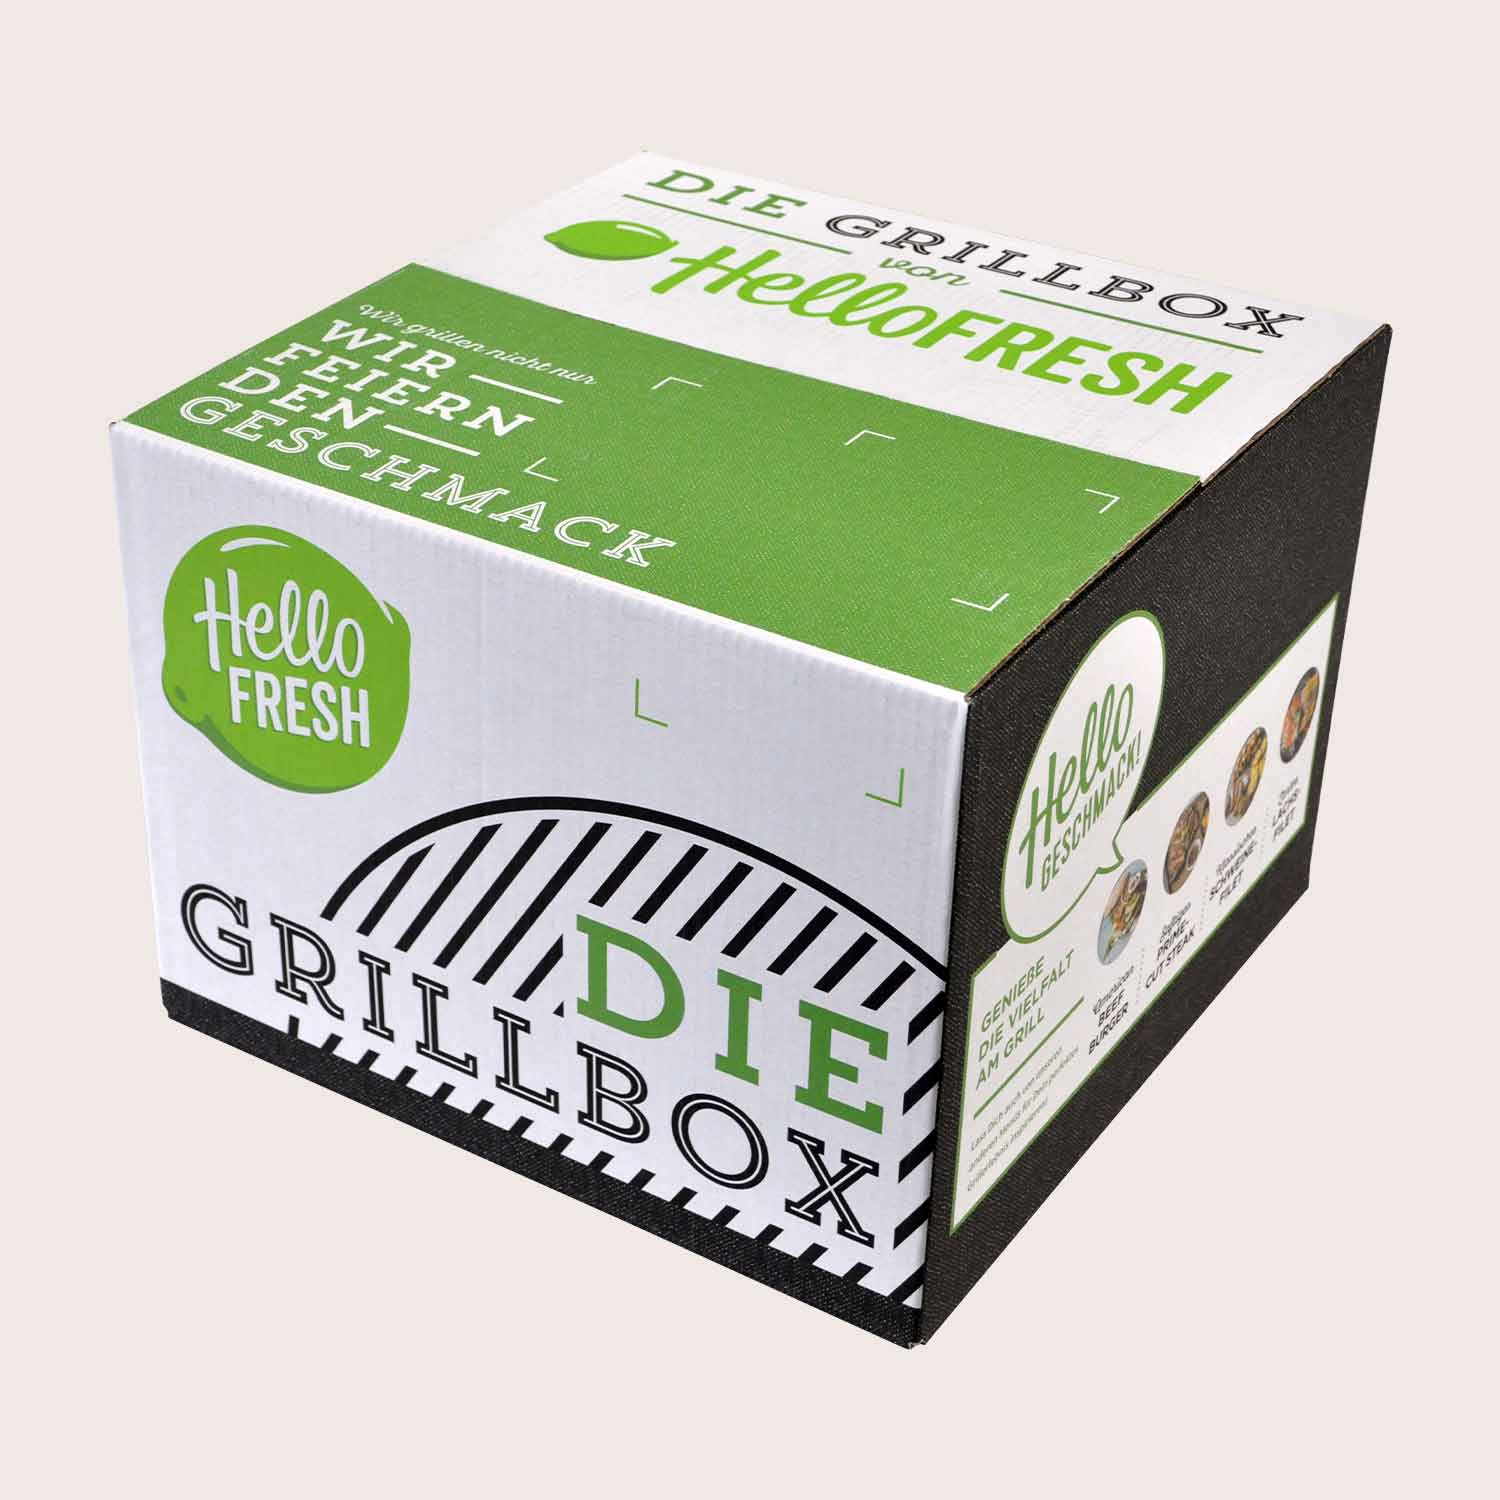 Verpackungen als Markenbotschafter: Hello Fresh